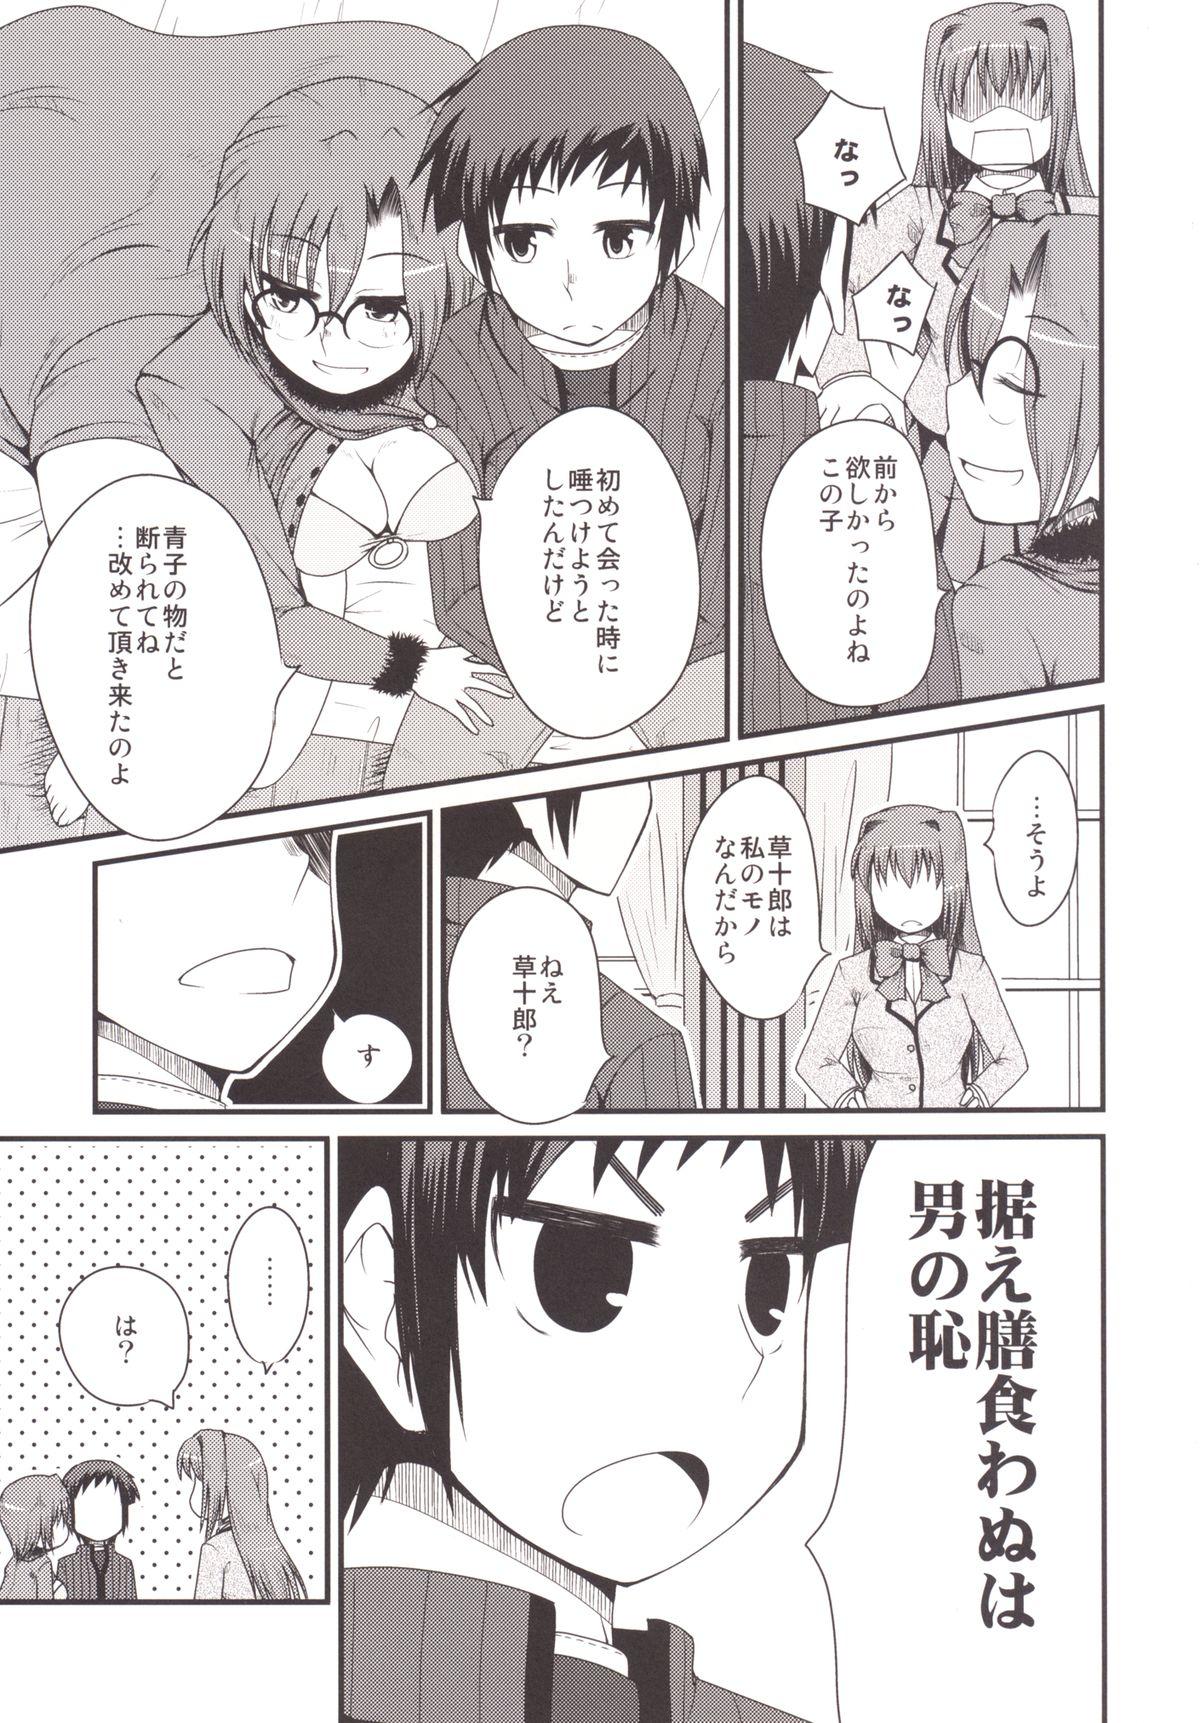 Travesti Ittsu Main 2 - Mahou tsukai no yoru Pica - Page 7